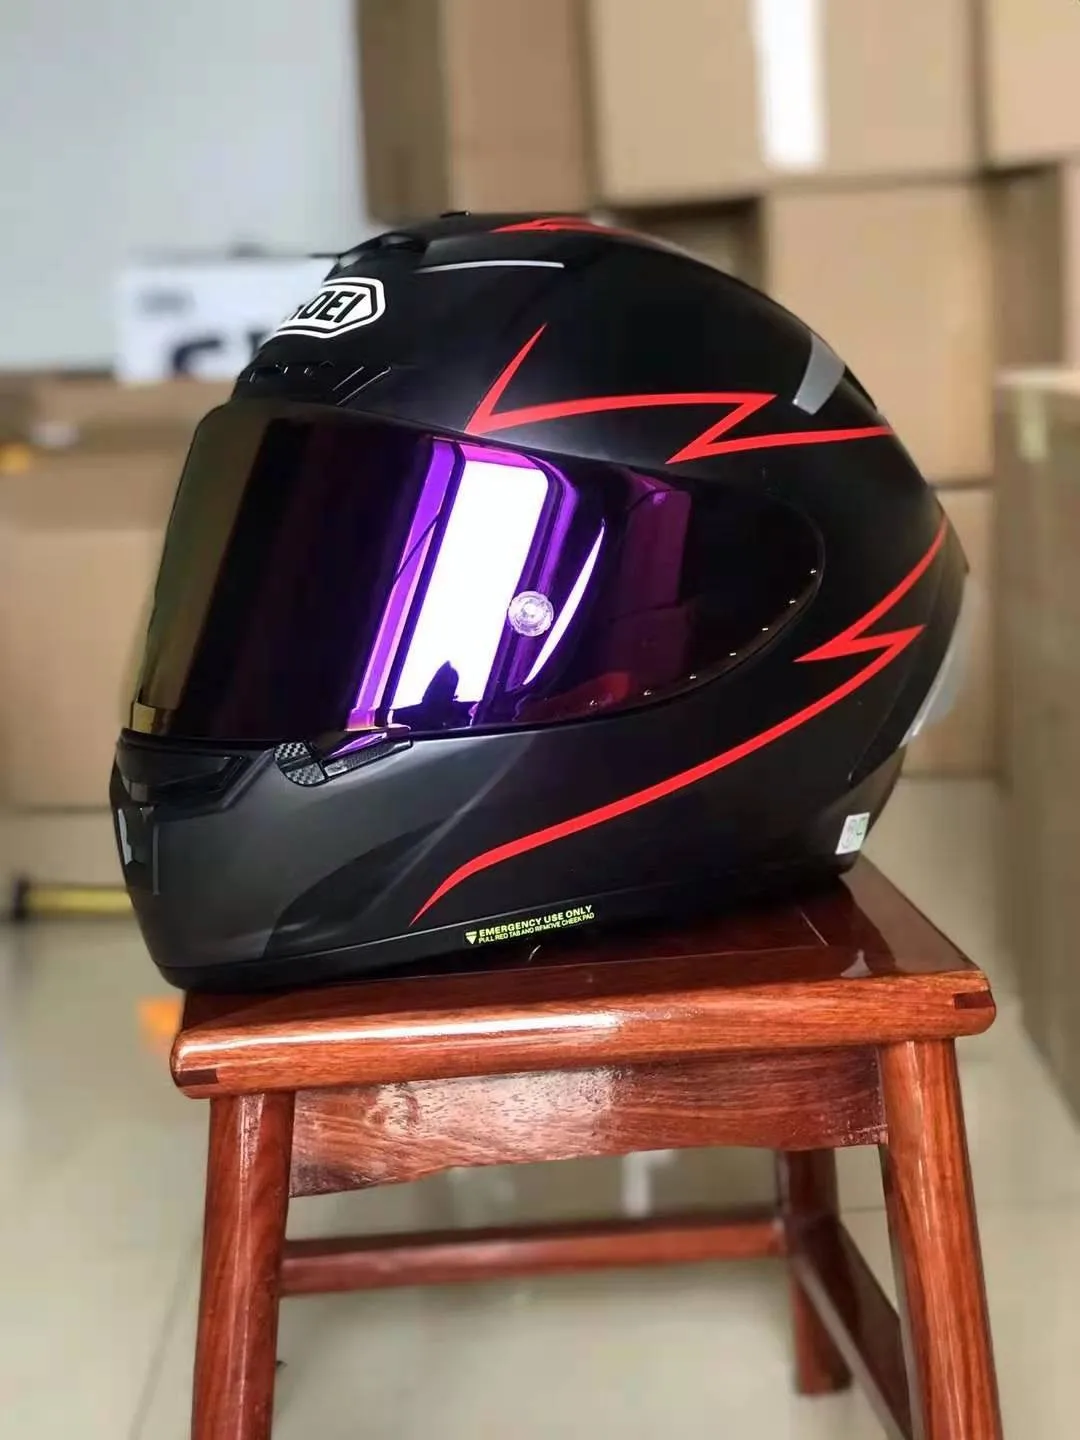 

Мотоциклетный шлем X14 93 Marquez, матовый черный, для езды на мотоцикле и велосипеде